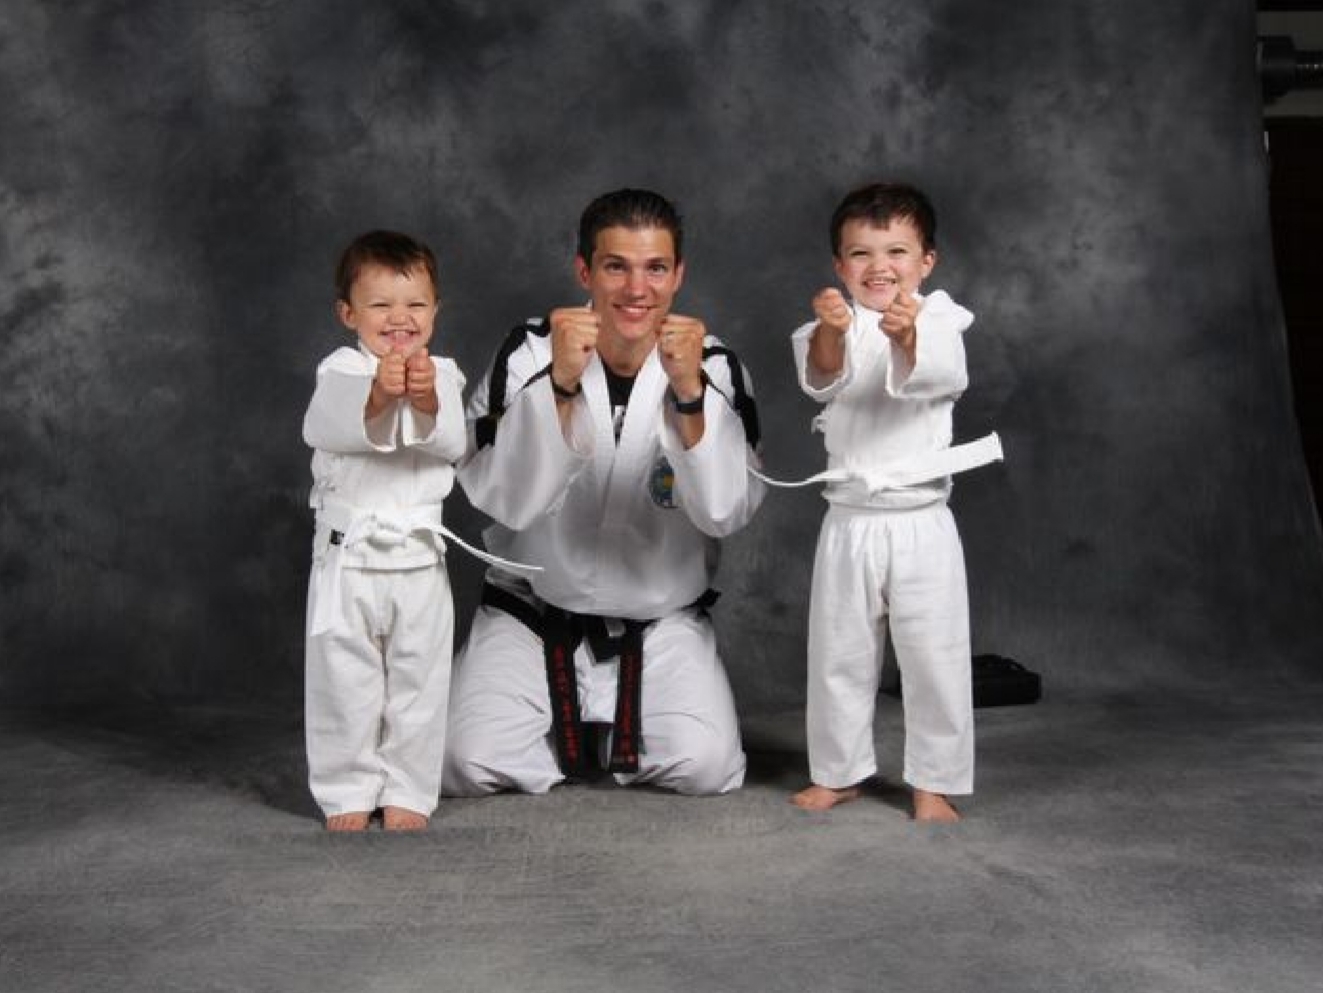 بهترین سبک کاراته برای کودکان